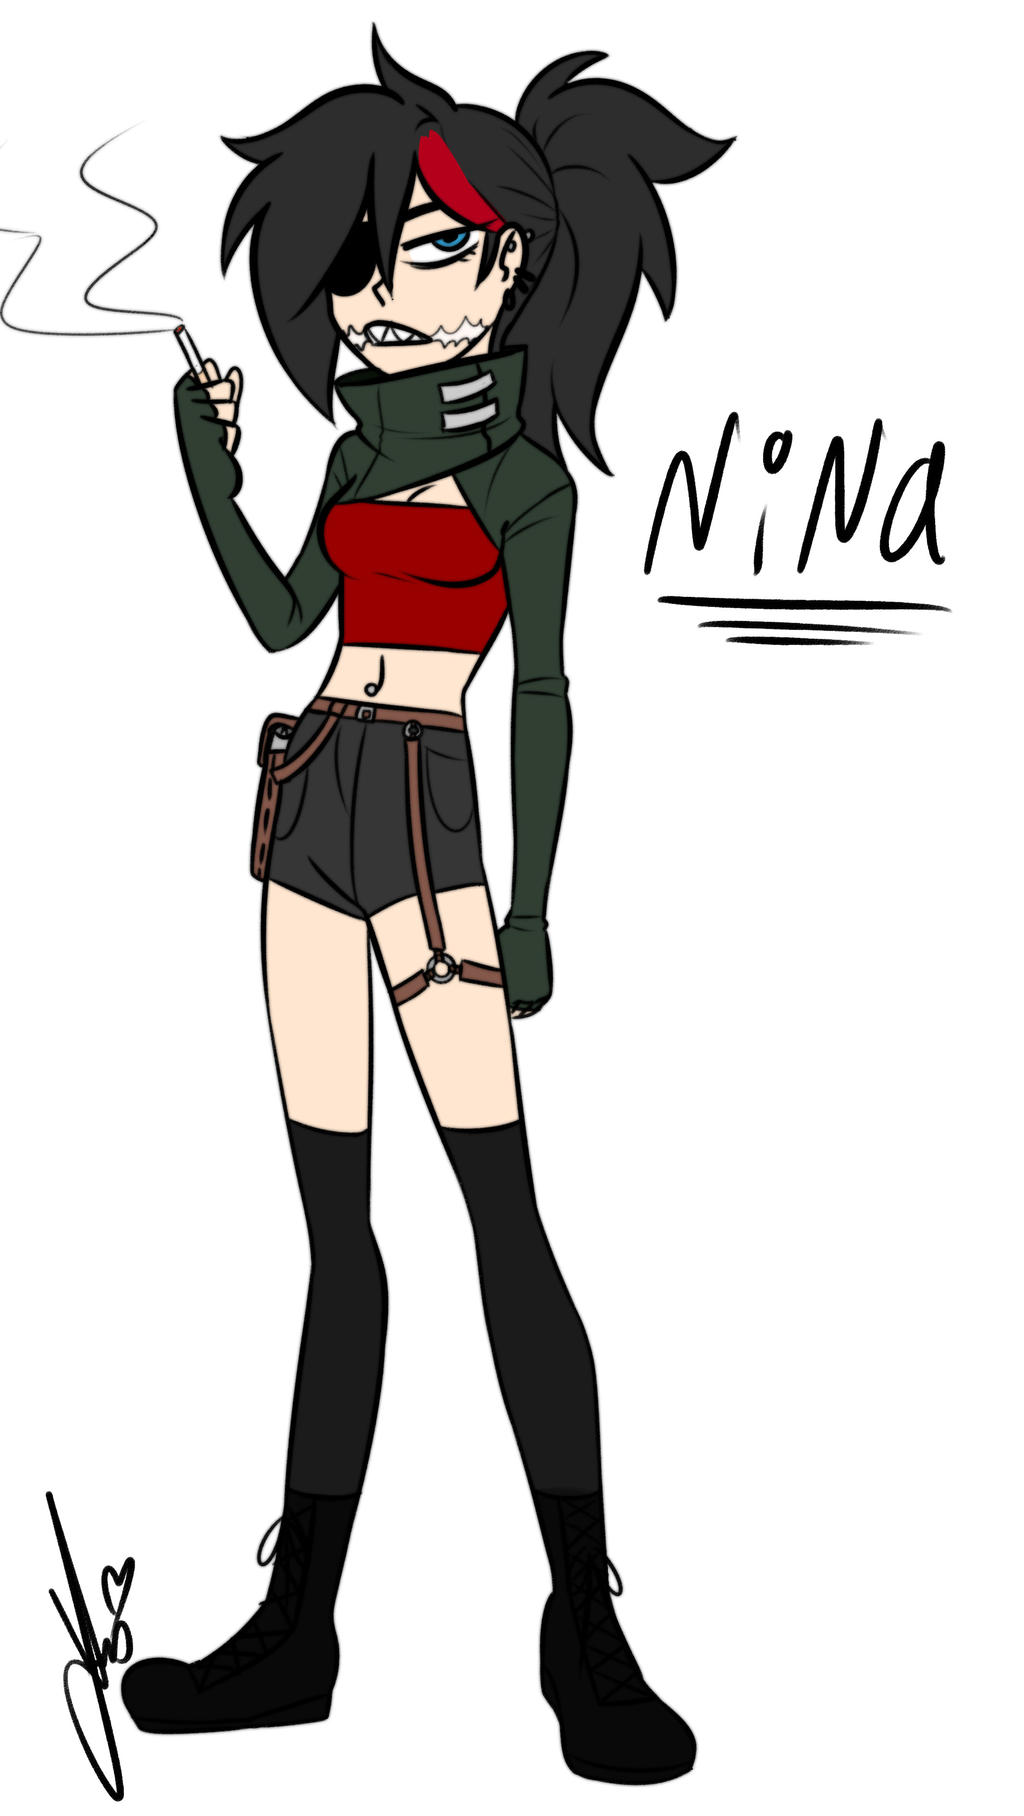 Nina, a Assasina, Wiki Creepypasta Brasil